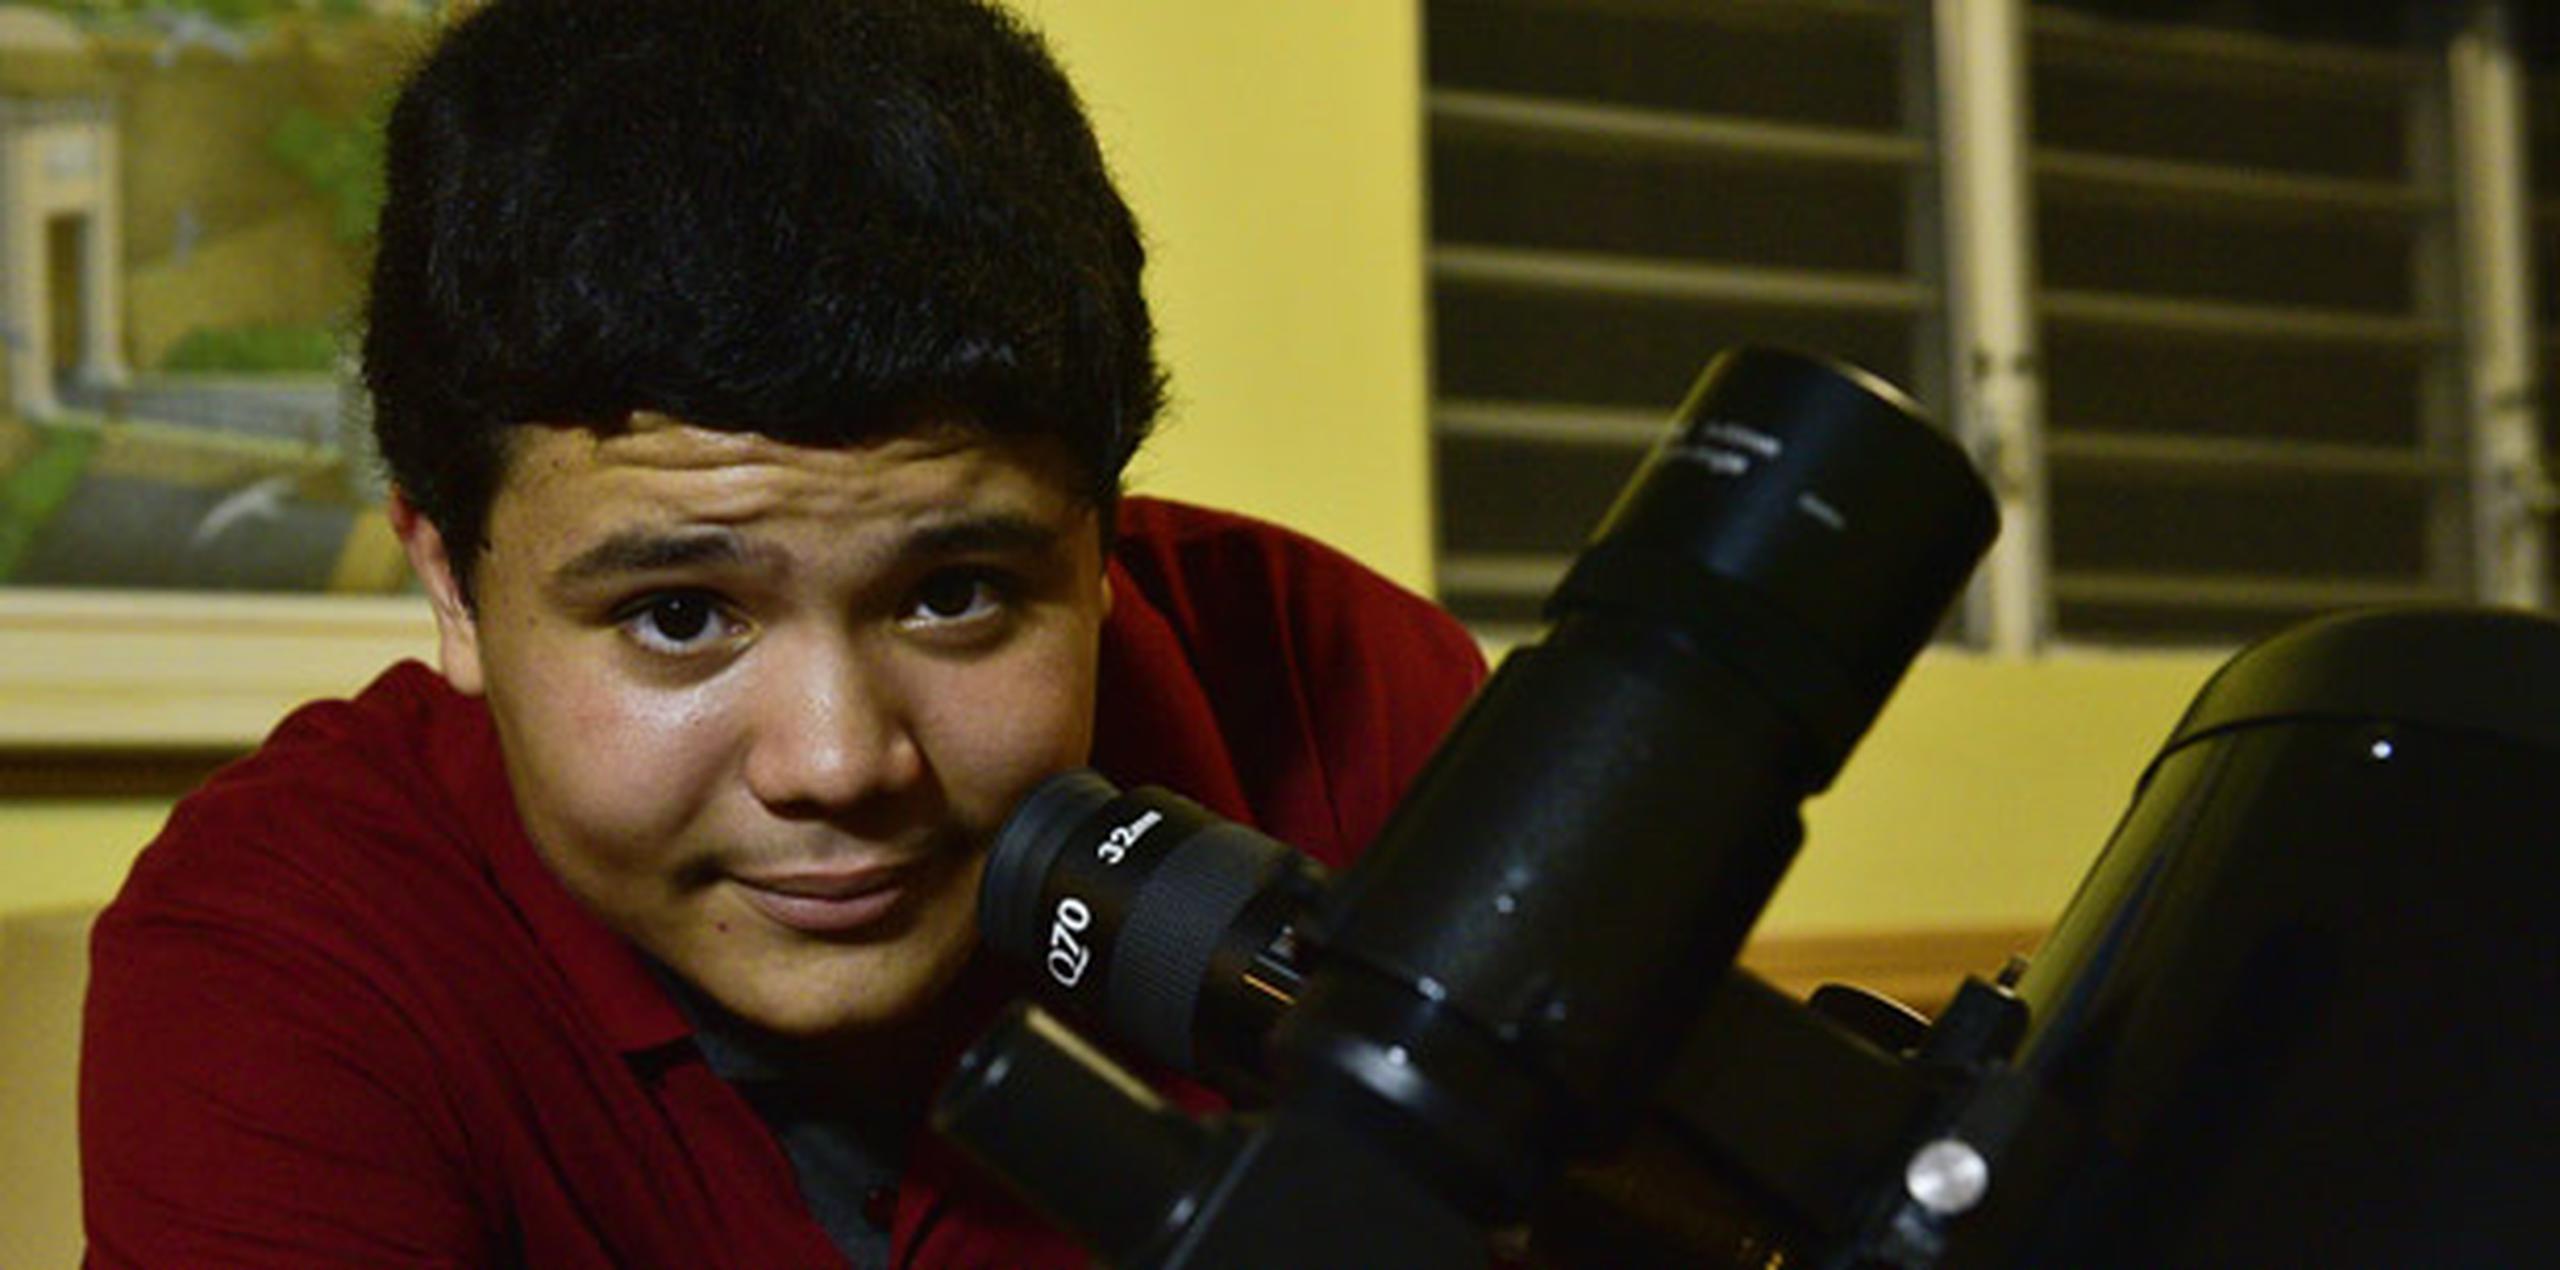 Rafael, quien desea ser astrónomo, sufrió discrimen en sus años escolares, “por lo que soy”, por ser diferente. (tony.zayas@gfrmedia.com)